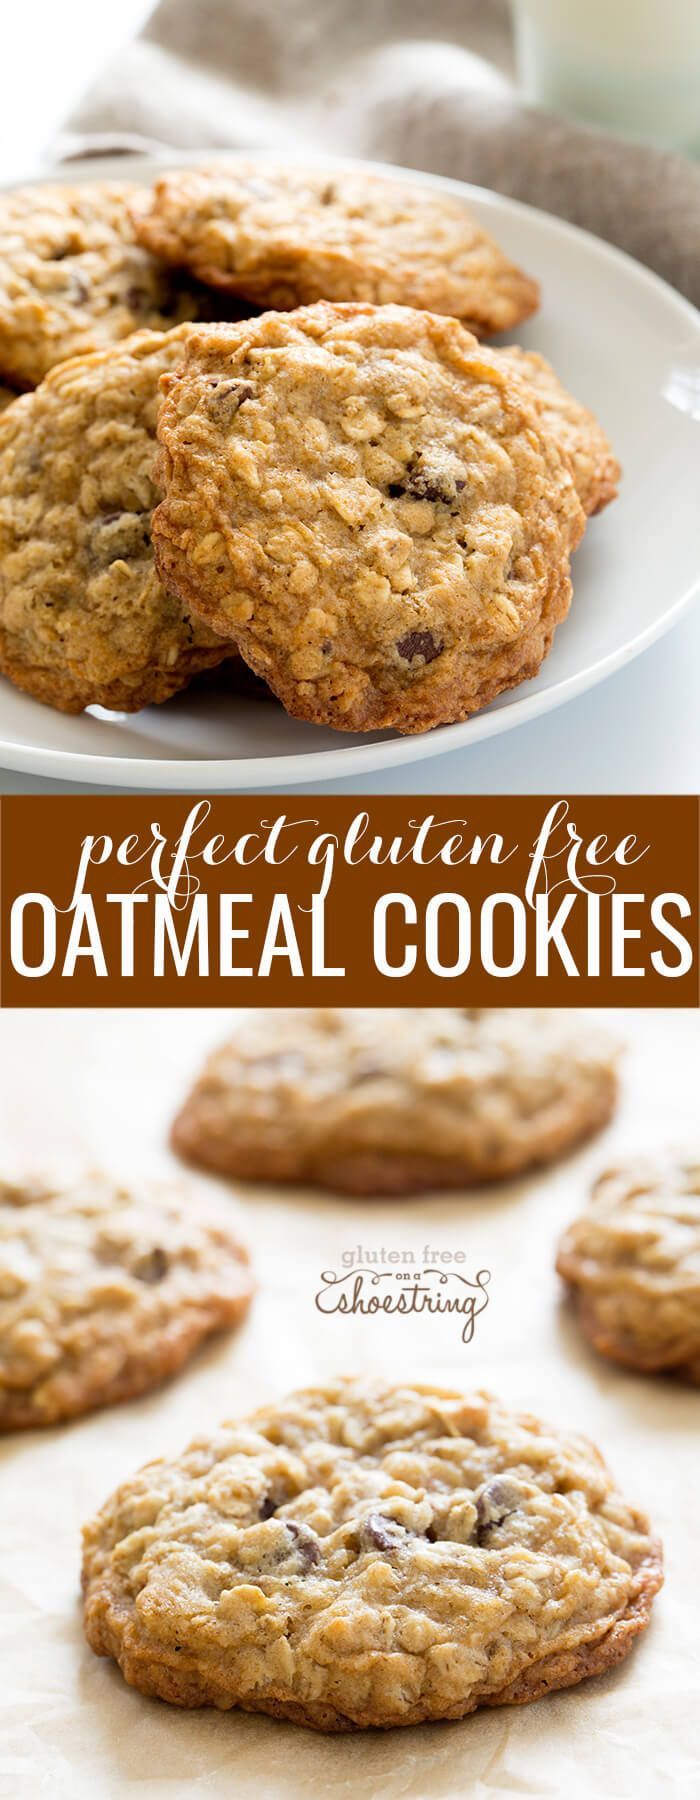 19 gluten free oatmeal
 ideas